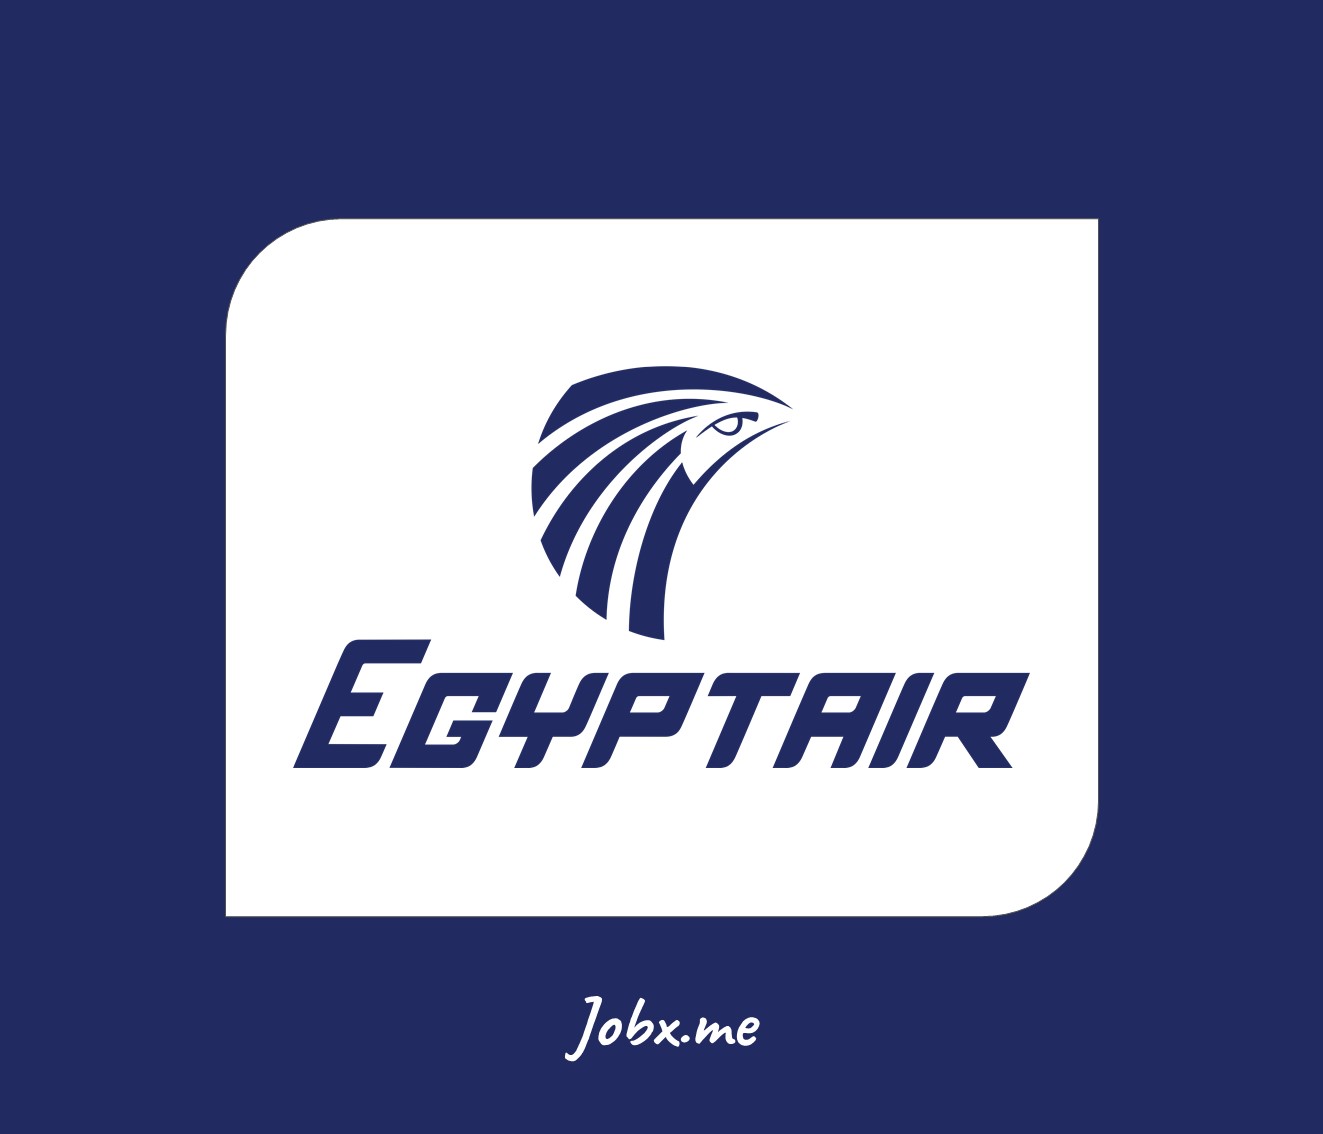 Egypt Air Jobs